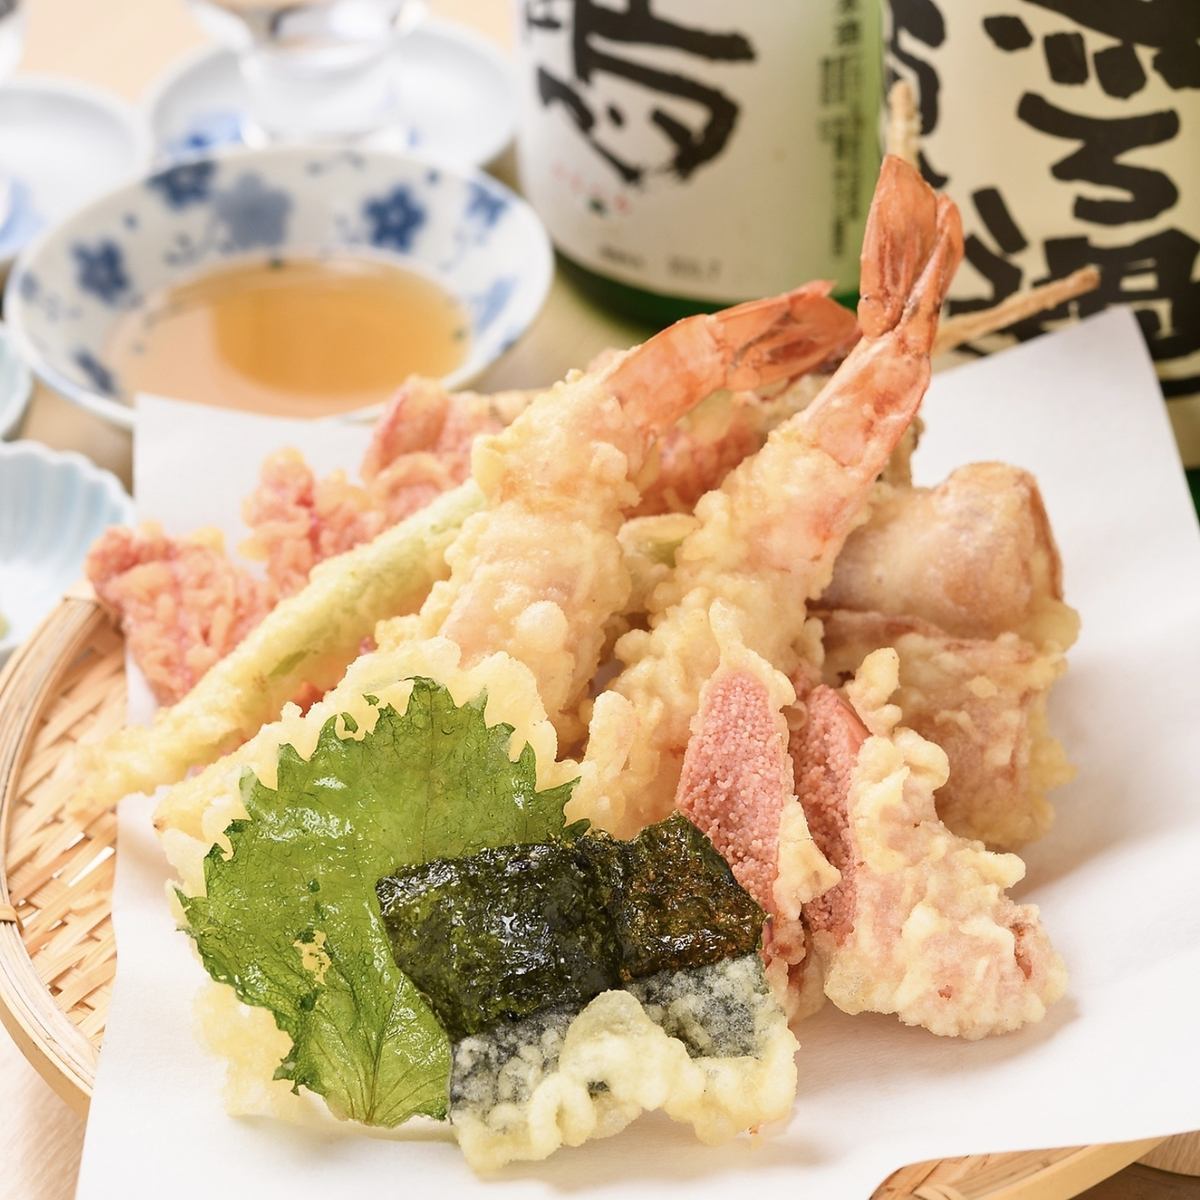 天ぷらや鮮魚など美味しいランチが楽しめます